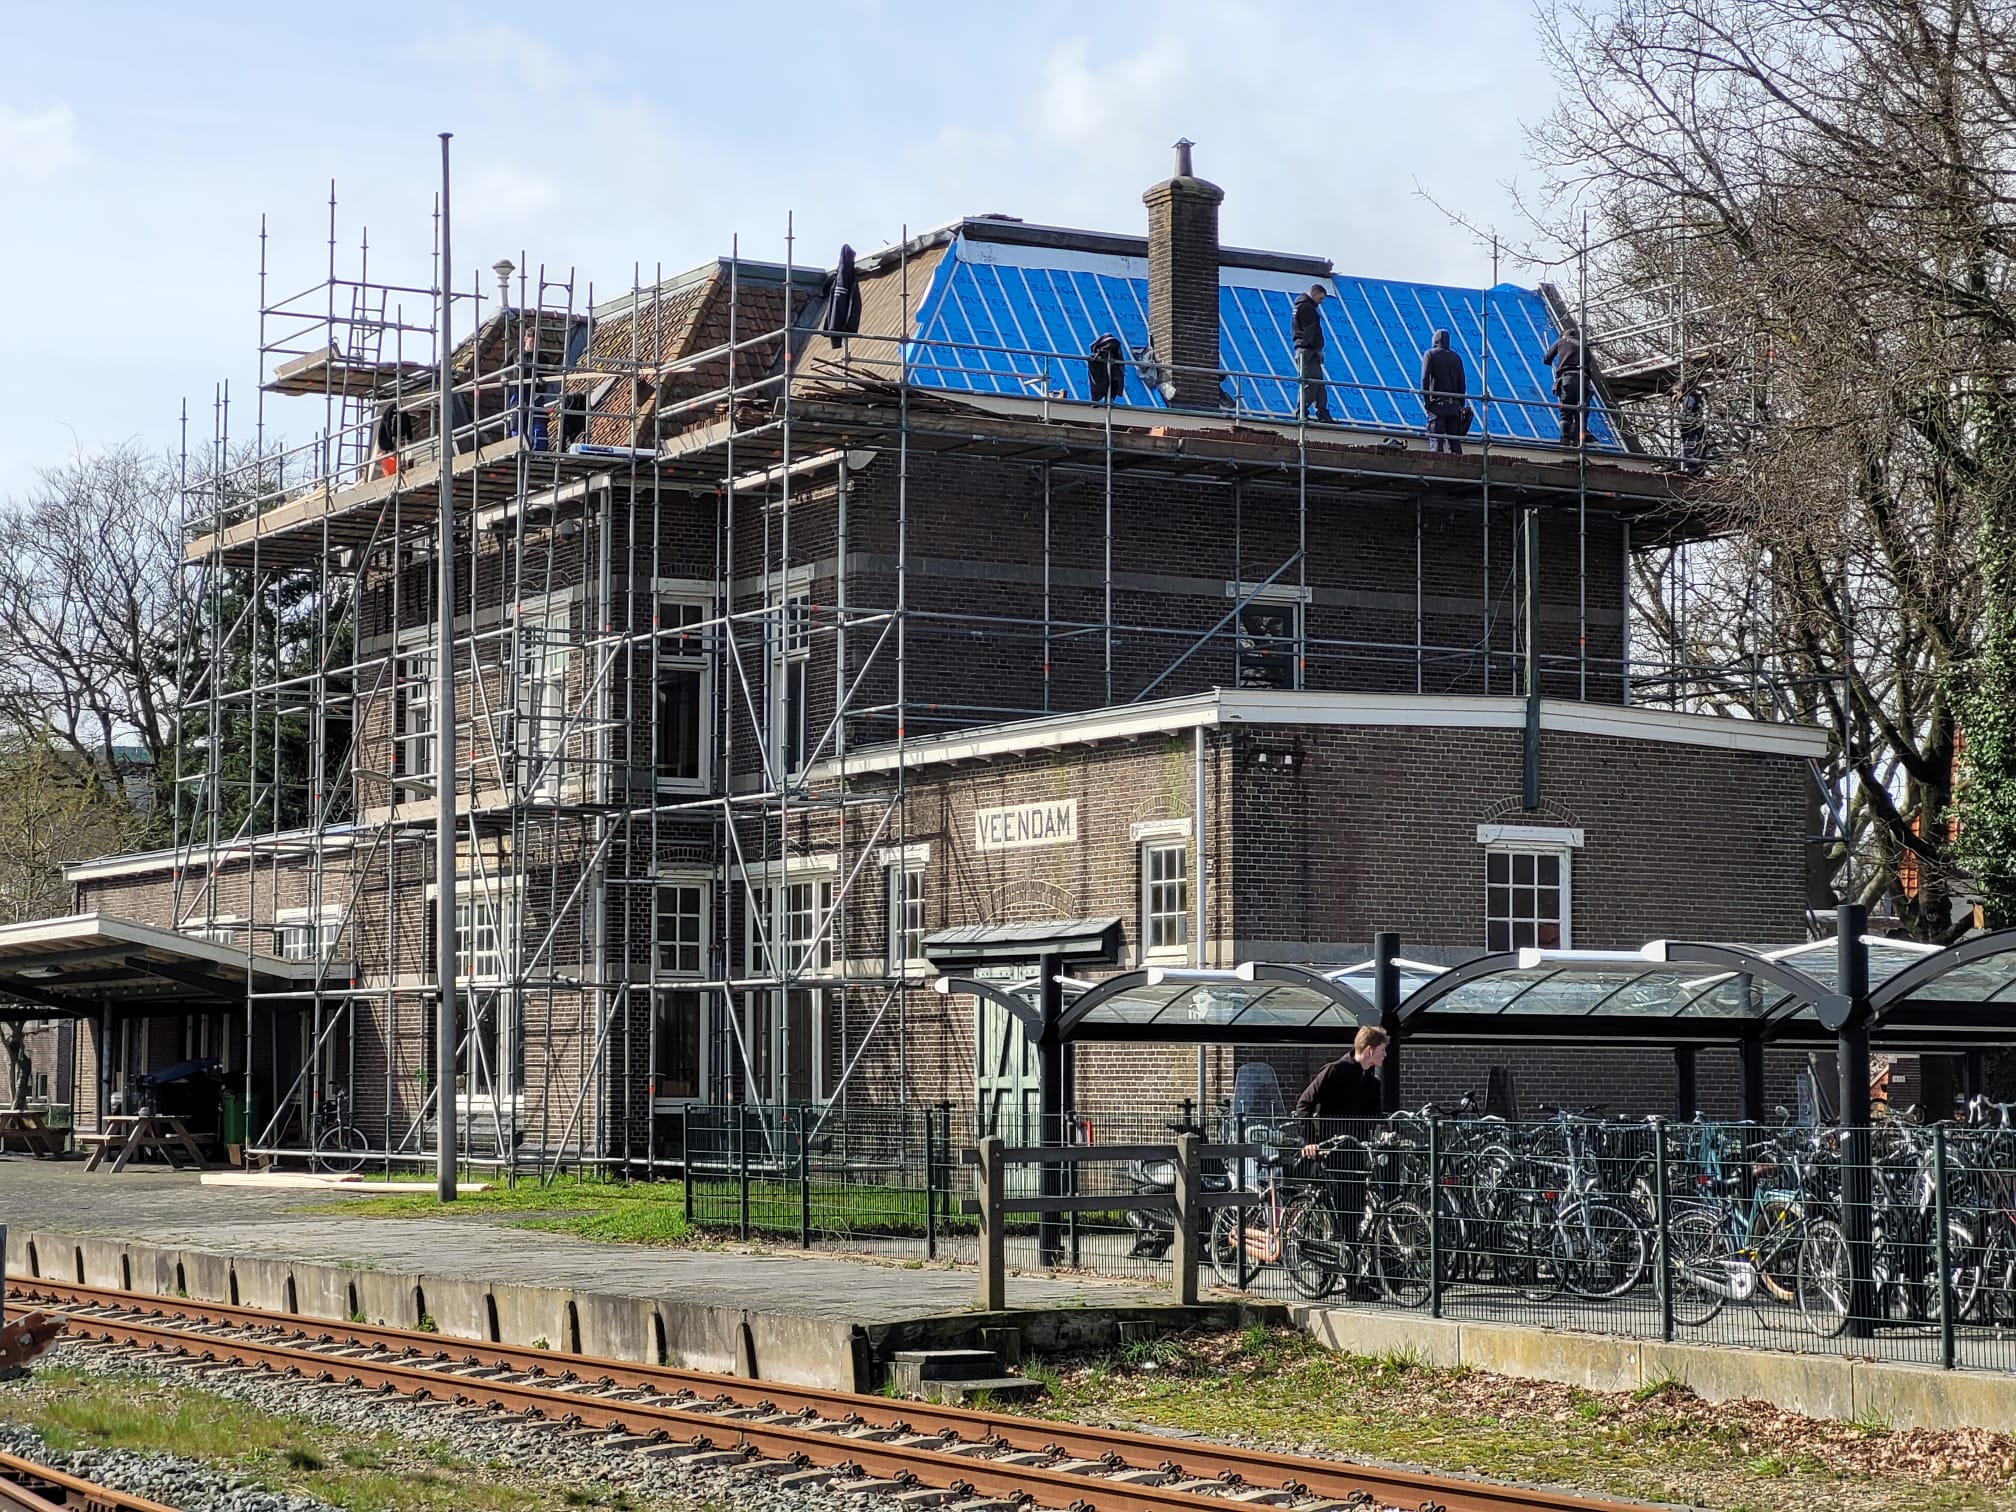 Historisch station Veendam in de steigers voor opknapbeurt